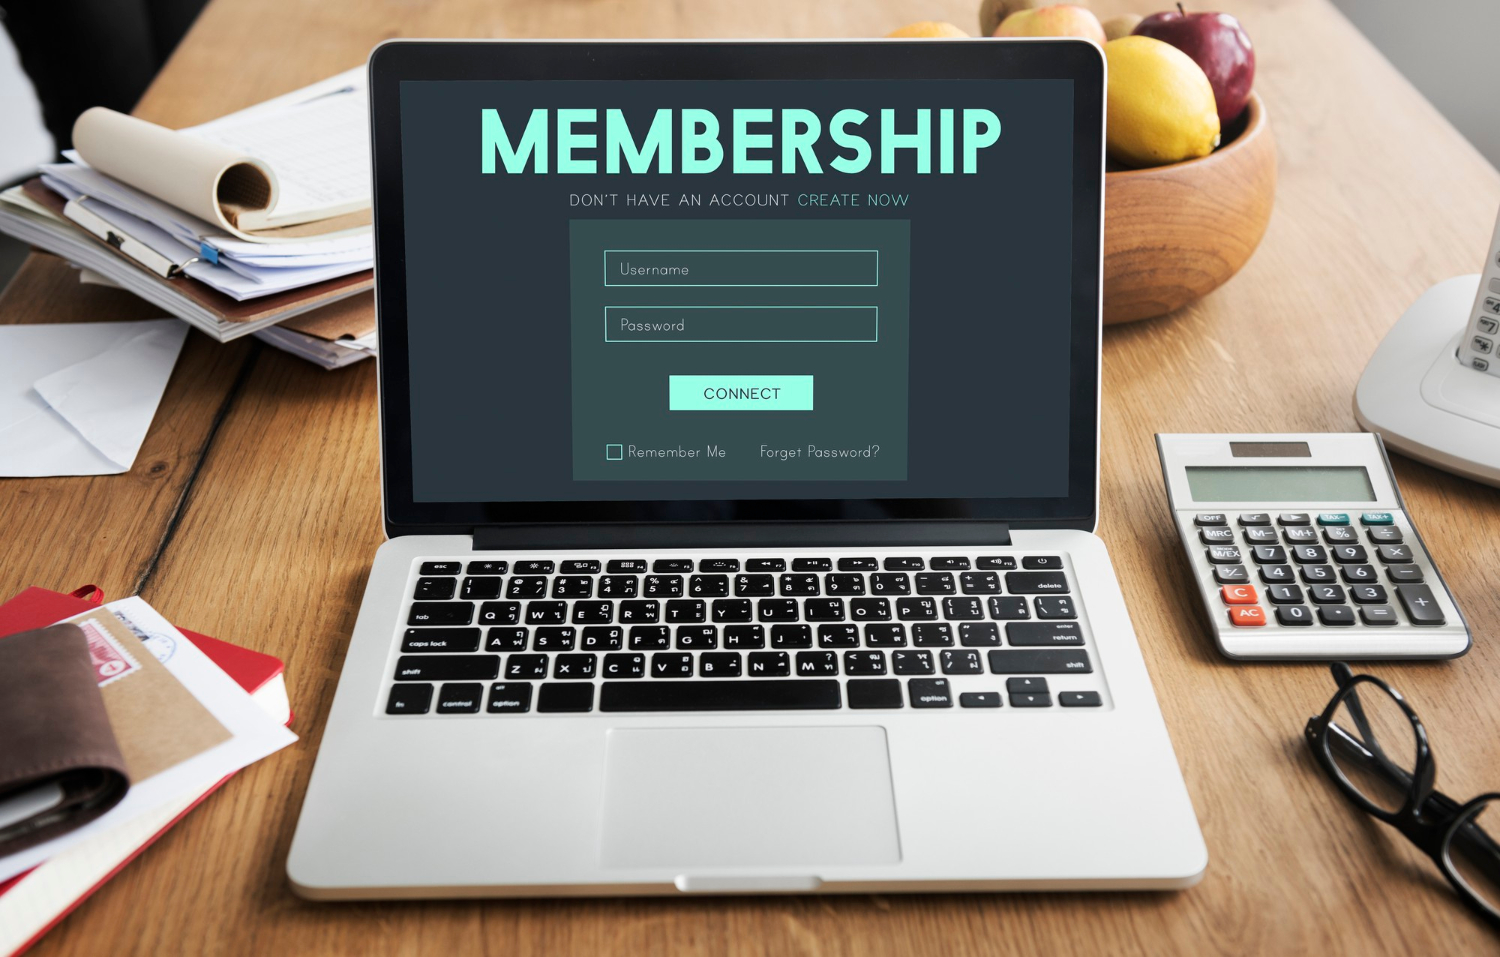 Dengan adanya membership program, pelanggan yang menjadi anggota akan menjadi loyal dan tetap menunggu program menarik lainnya dari produk atau layanan yang sering dipakainya.